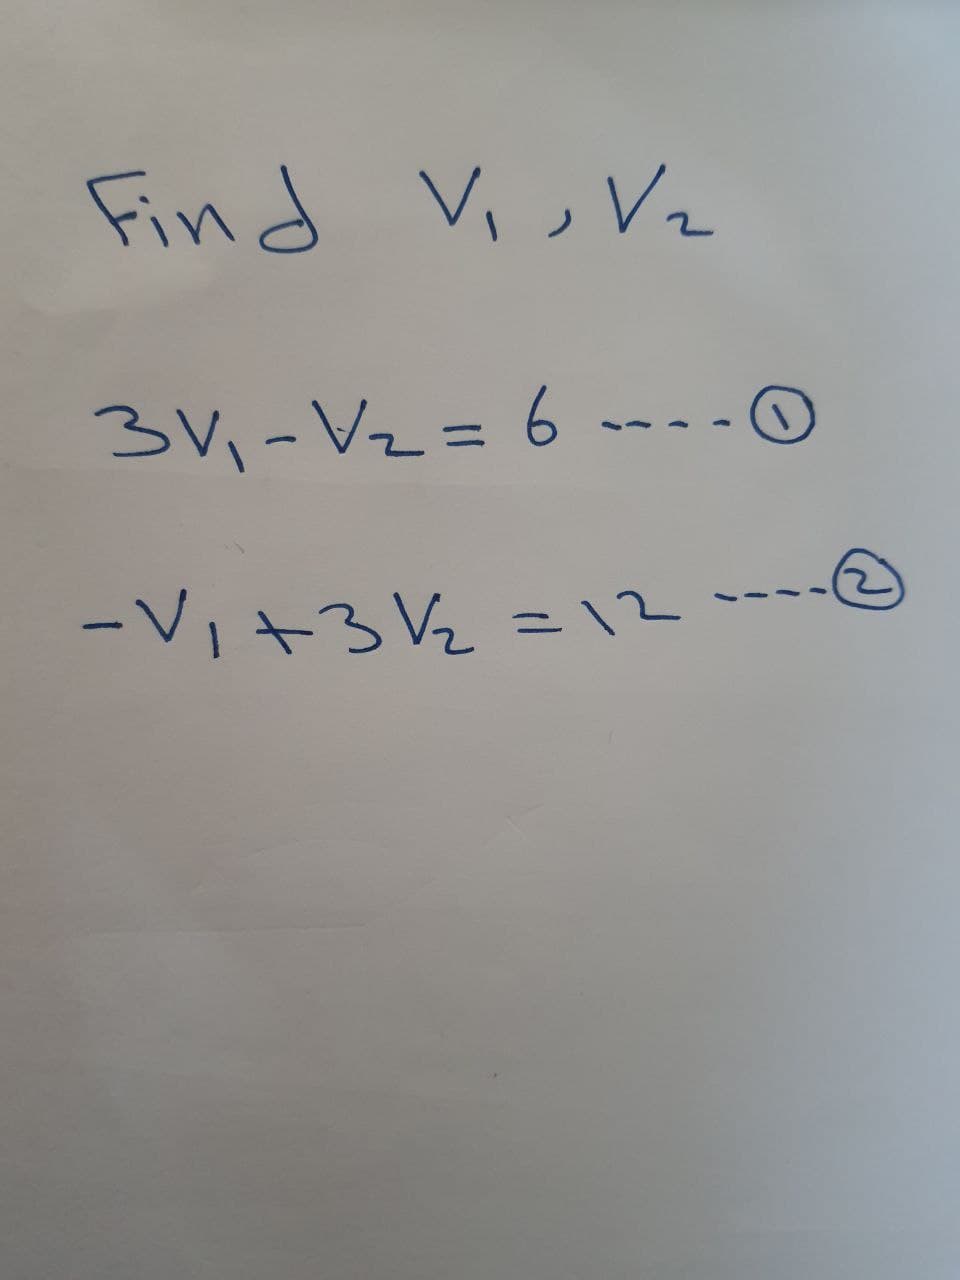 Find Vi, V2
3,-Vz =6 -- -0
%3D
-Vi+3 V½ =12
